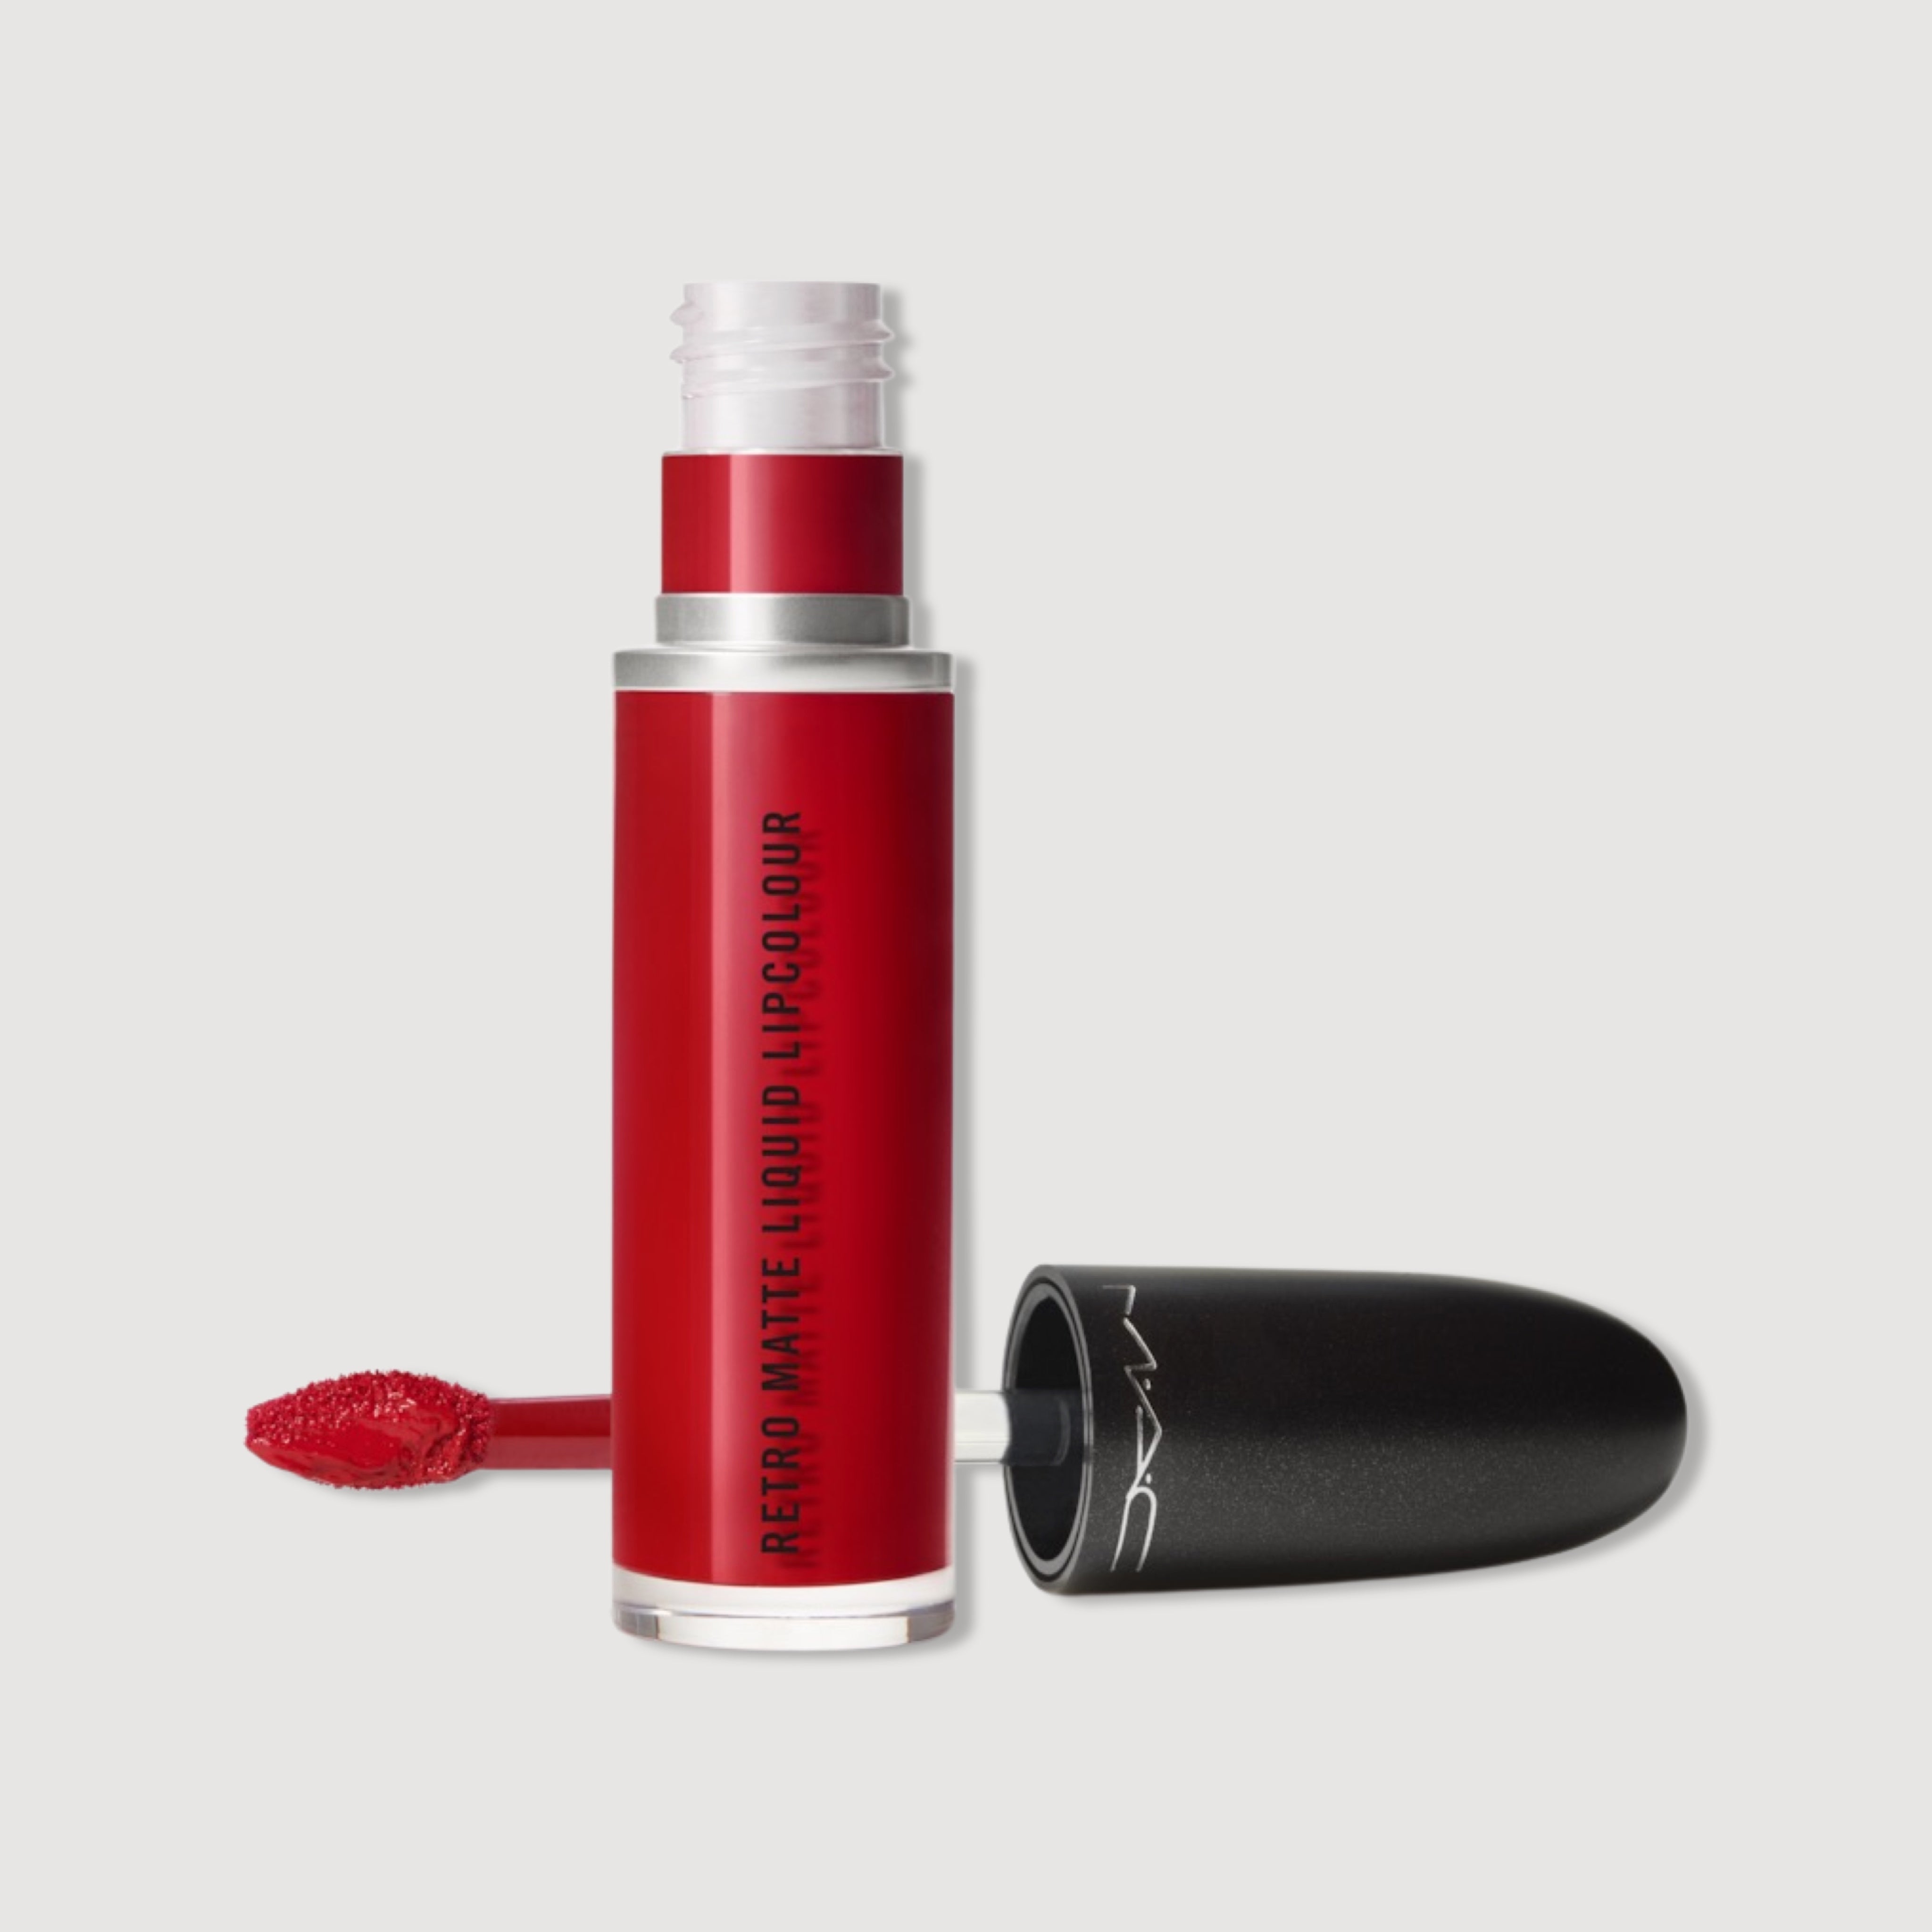 M.A.C Retro Matte Liquid Lipstick